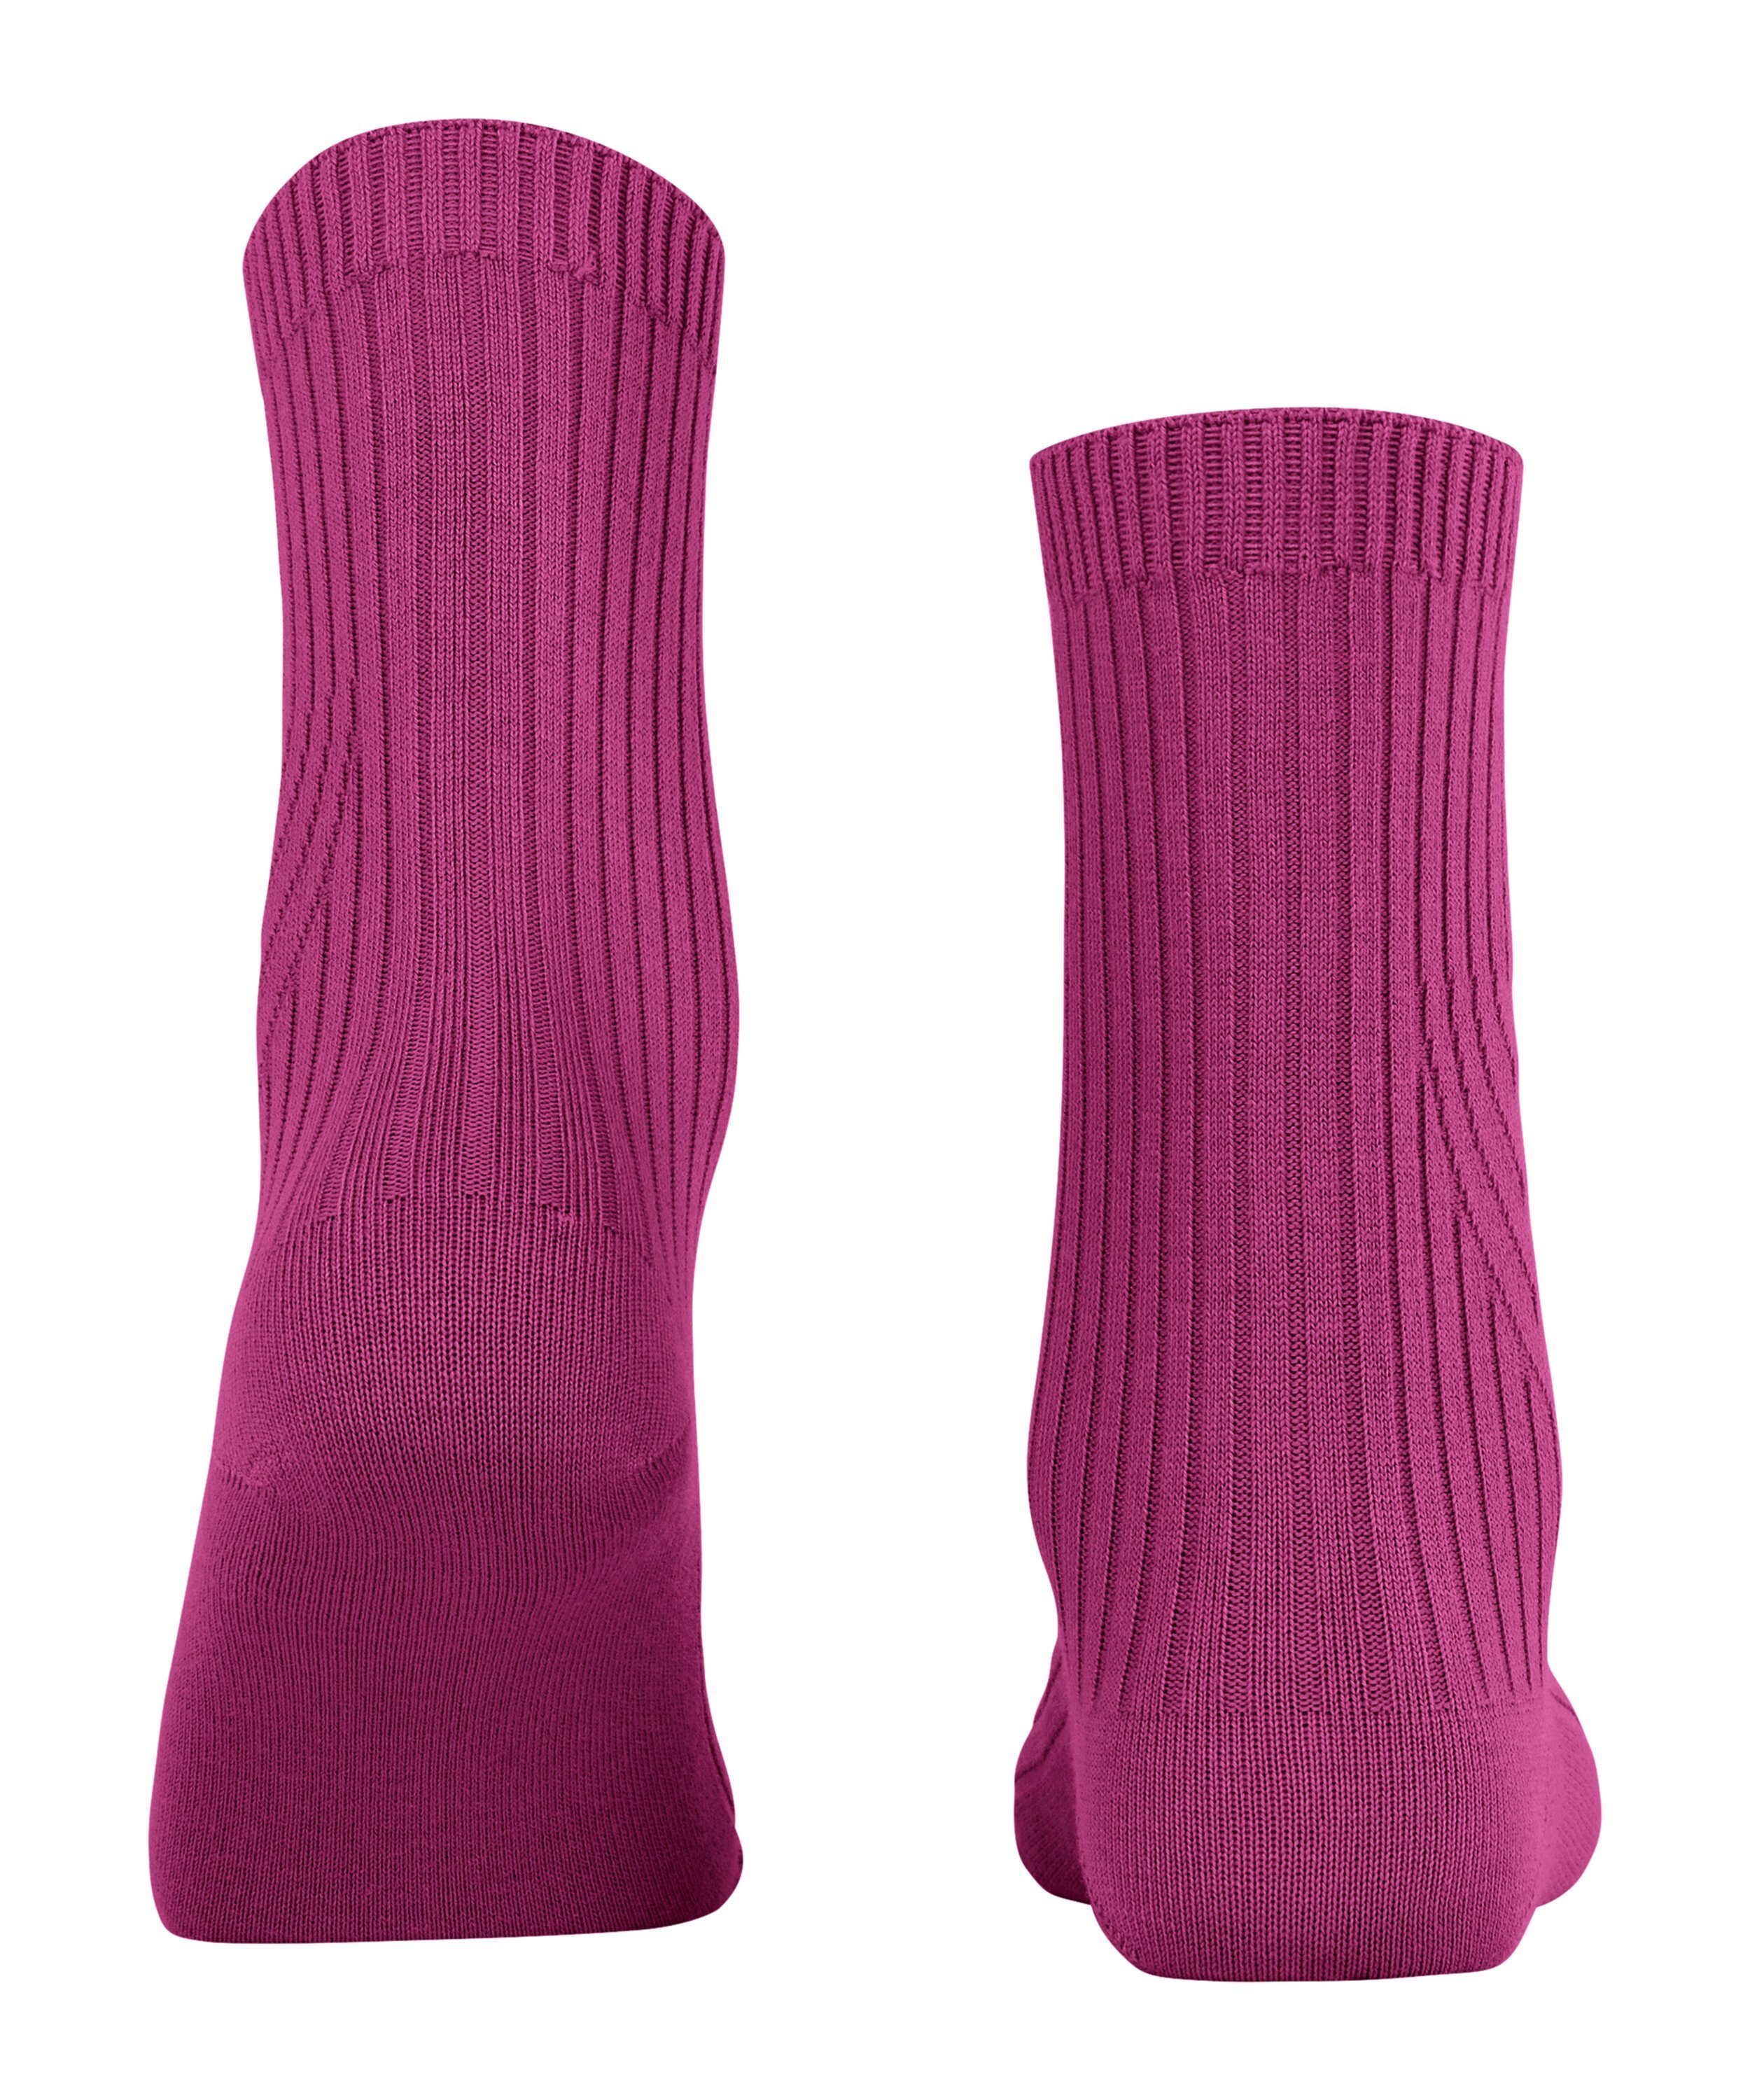 (1-Paar) Socken pink orchid Cross (8409) Knit FALKE